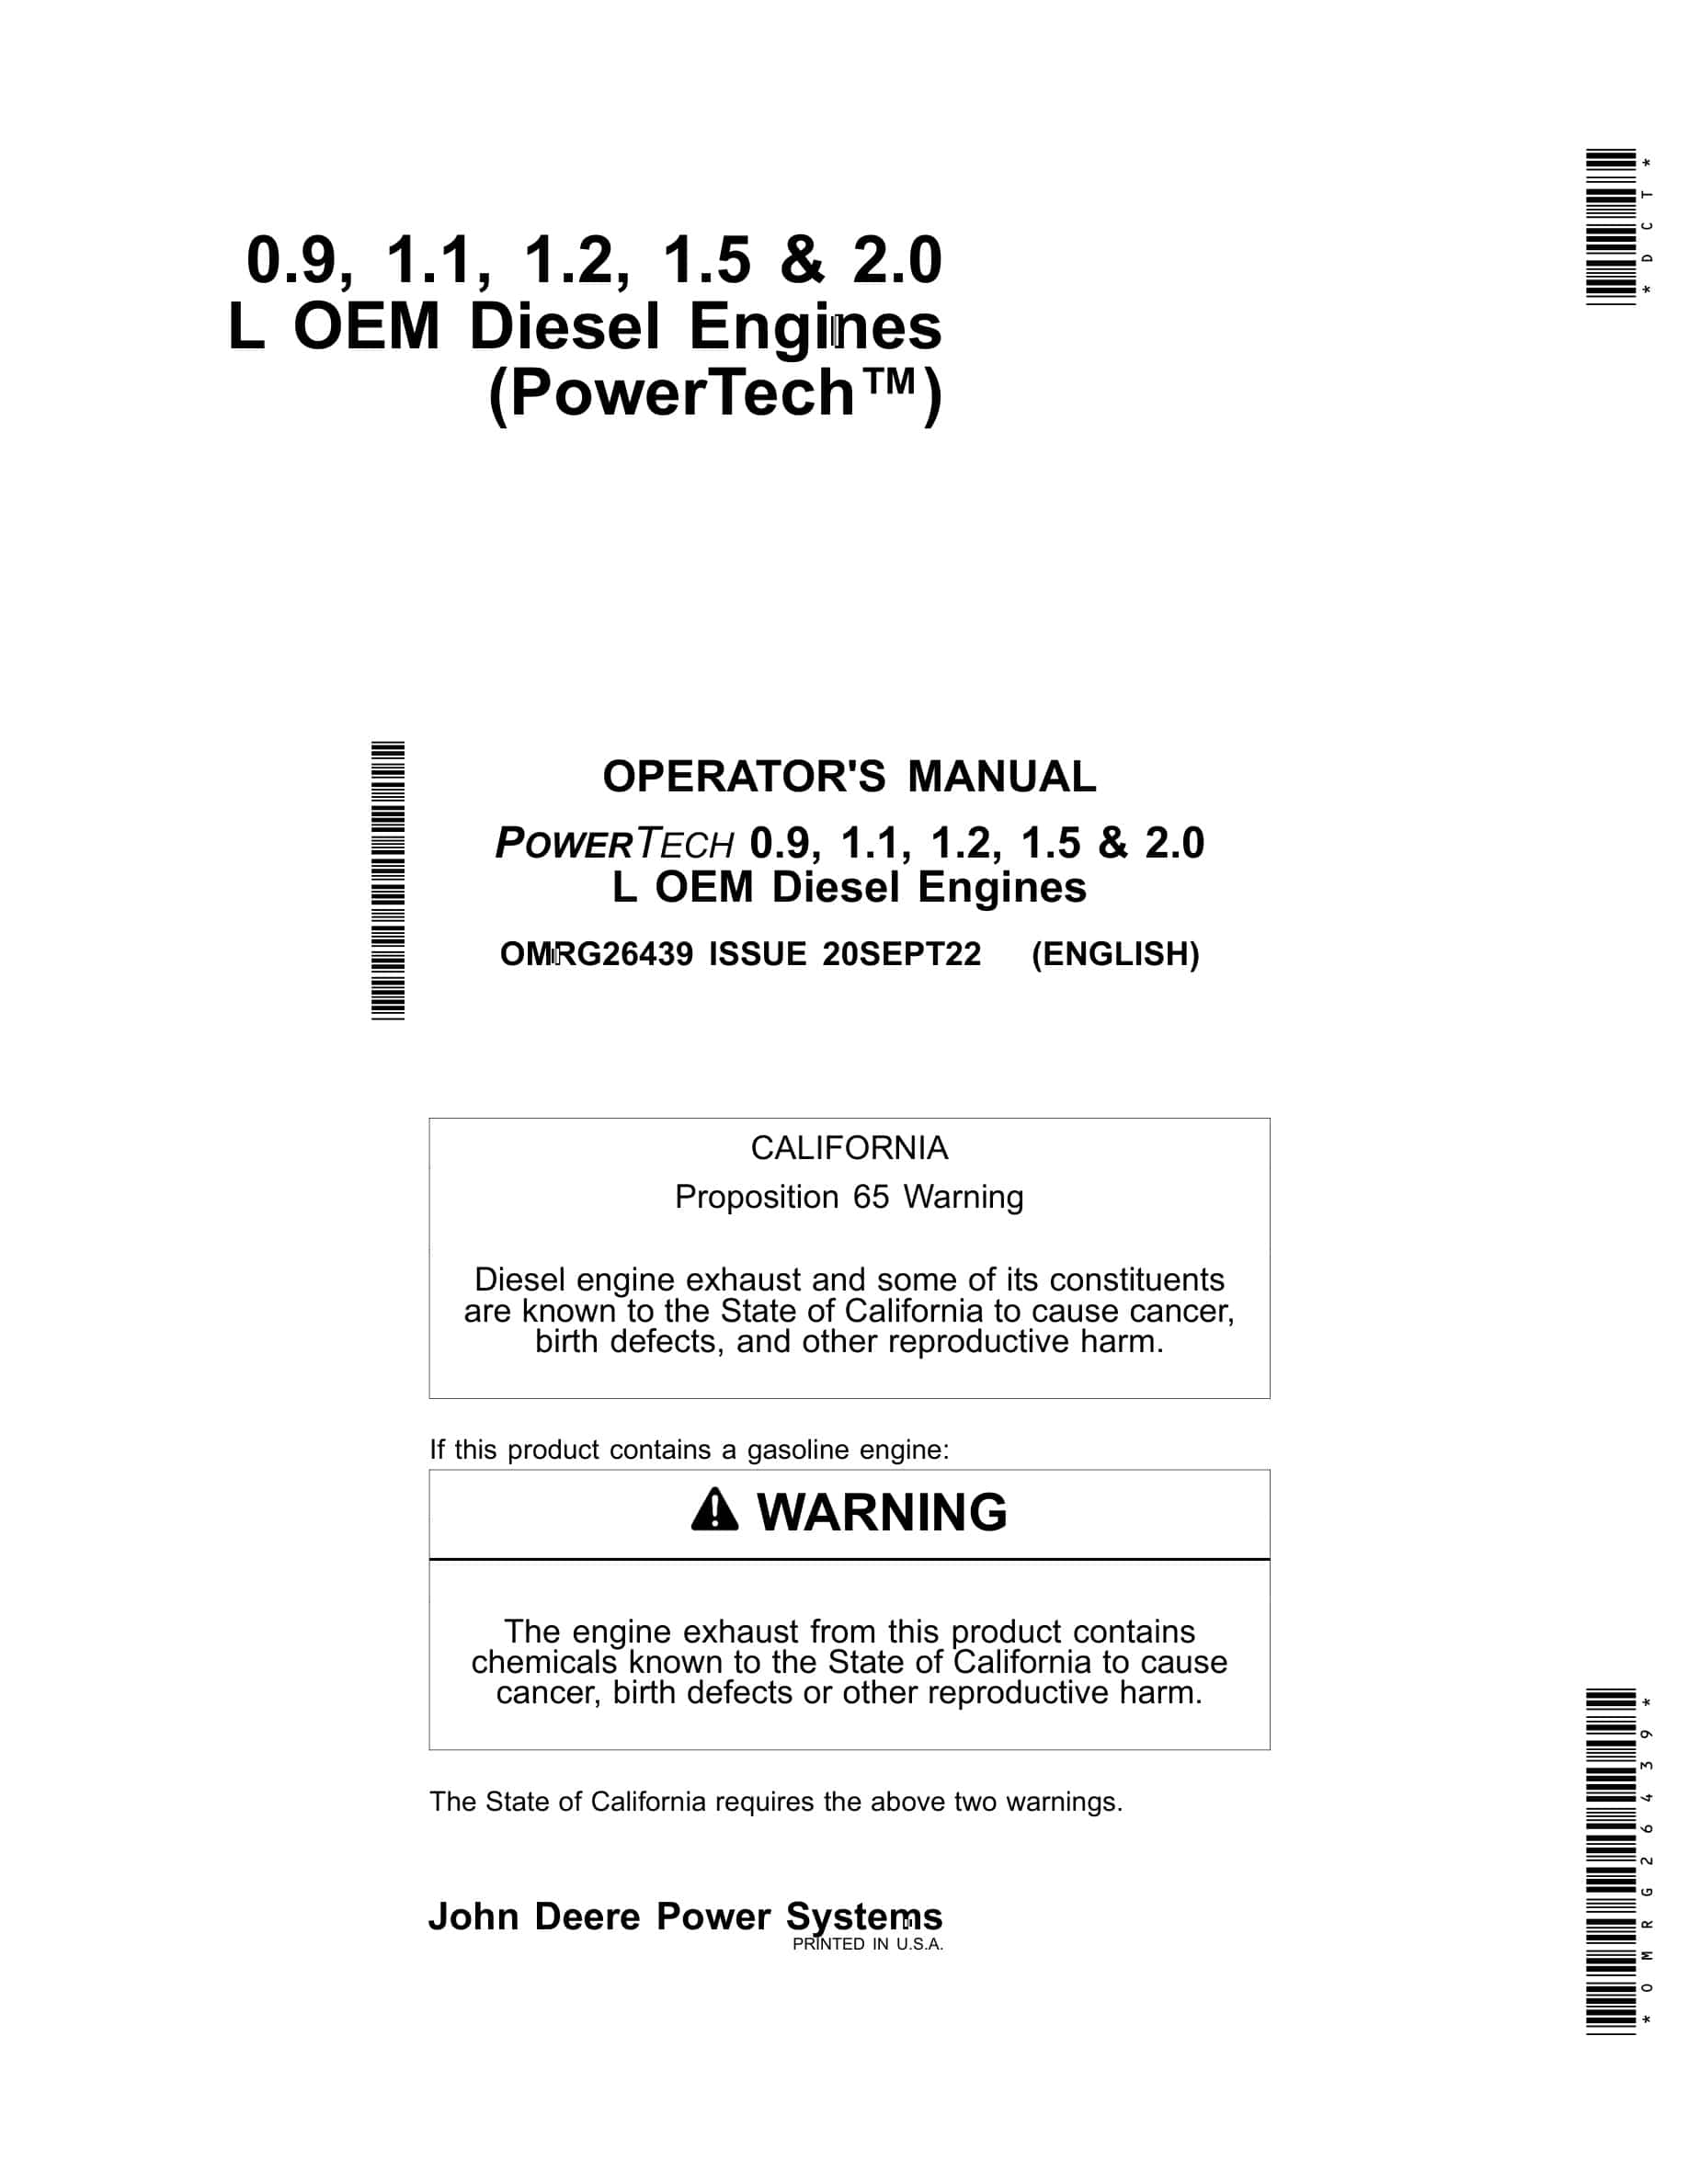 John Deere PowerTech 0.9, 1.1, 1.2, 1.5 & 2.0 L OEM Diesel Engines Operator Manual OMRG26439-1